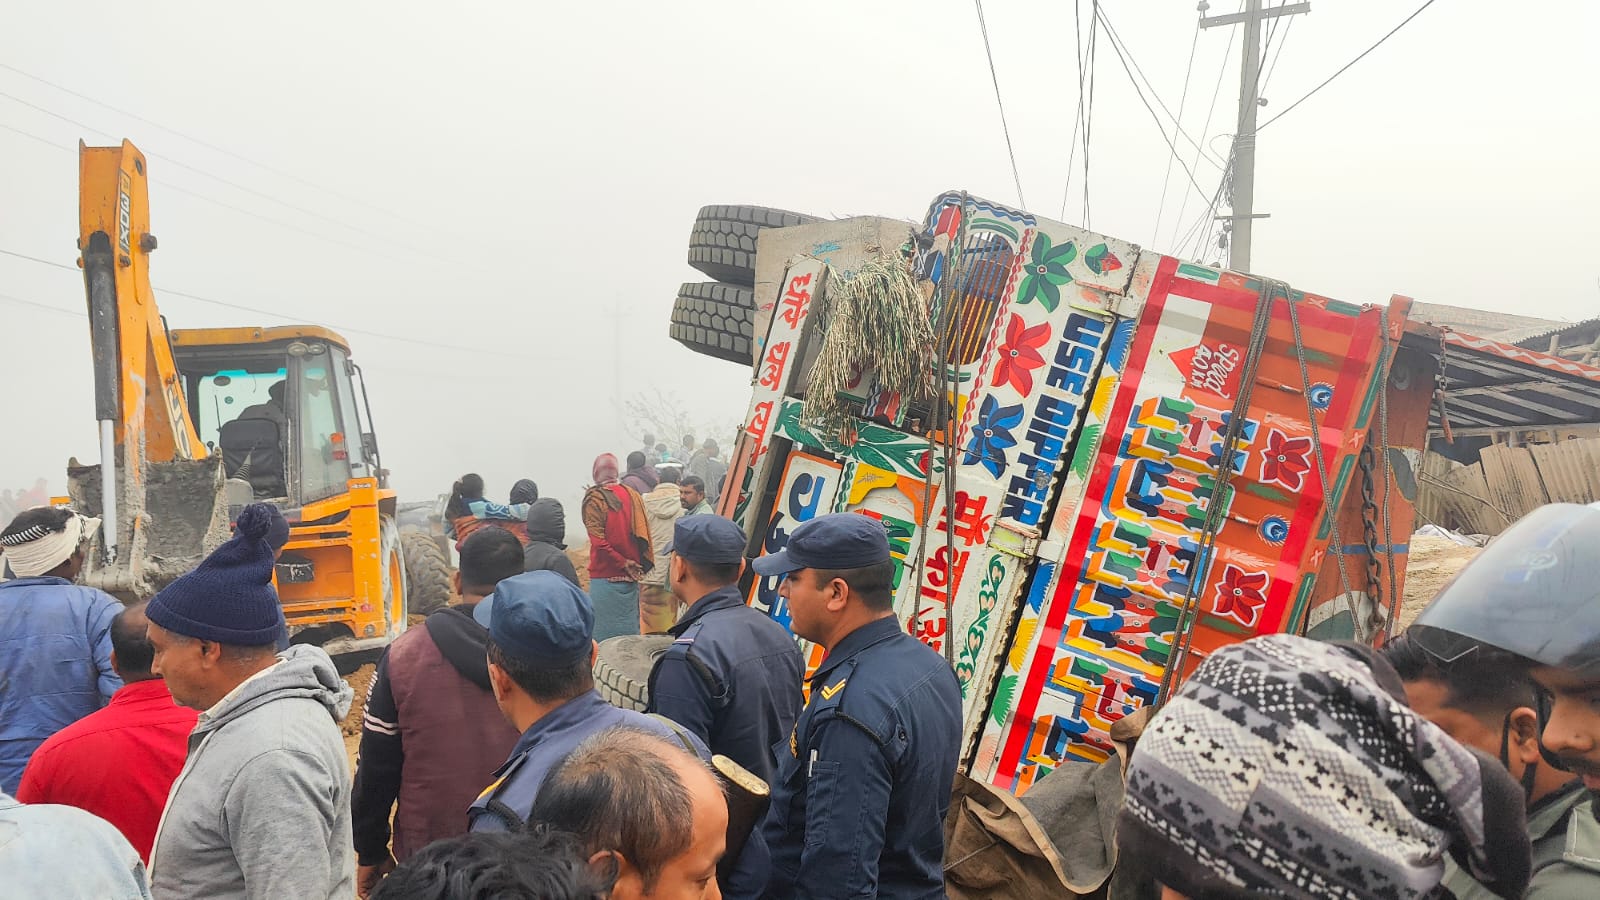 दुखद समाचार : ट्रक पल्टिदा किचिएका जुम्ल्याहा दाजु बहिनीसहित तीन जनाको मृत्यु